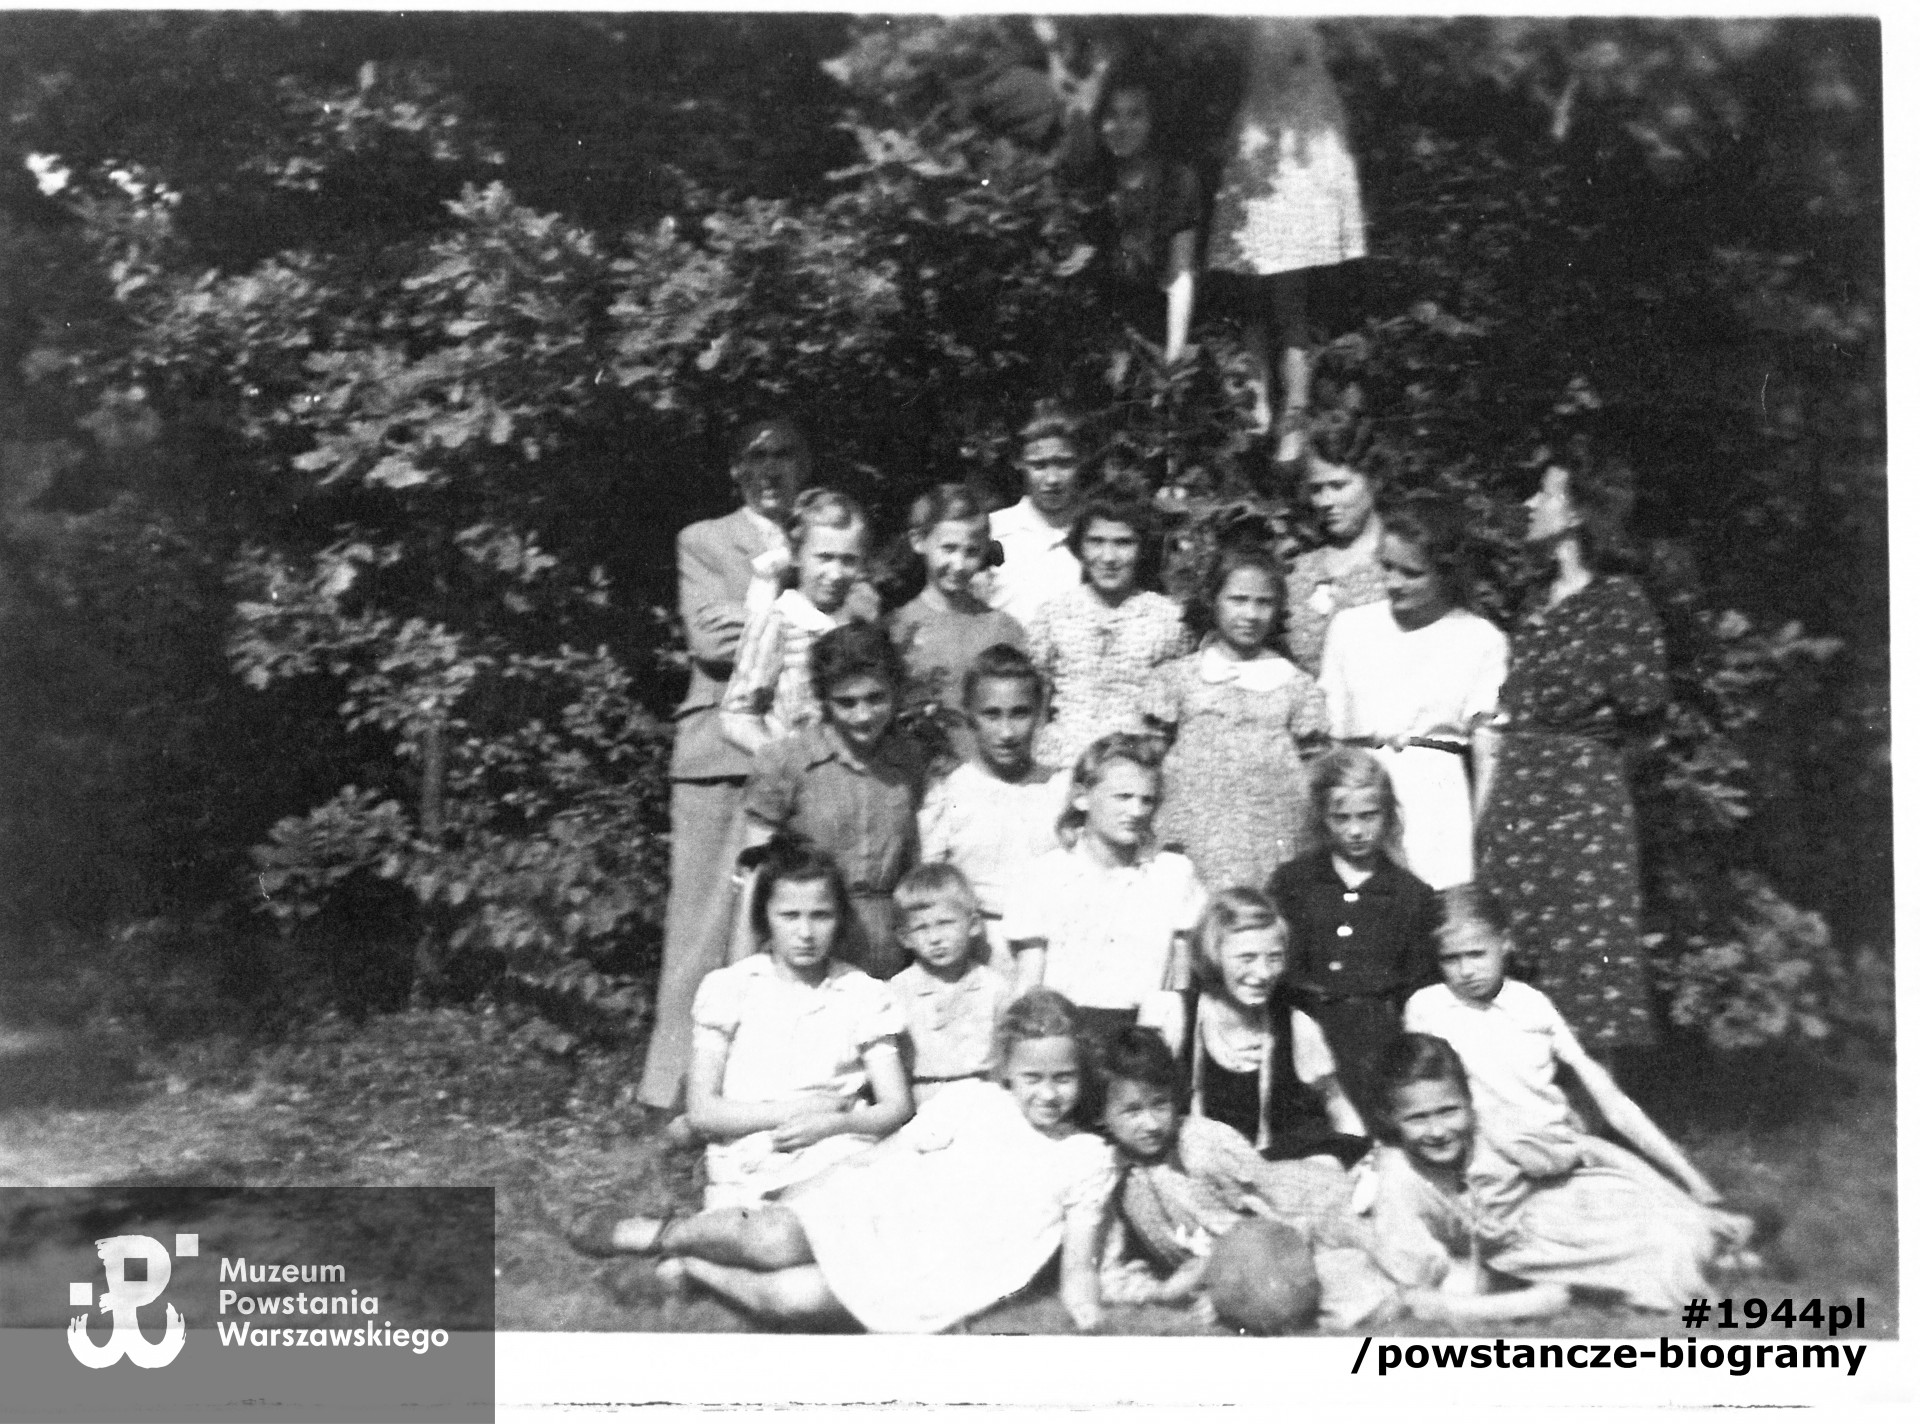 Fotografia  wykonana ok. 1942 roku,  przedstawiająca harcerski z trzech zastępów 100. WŻDH Hufca "Wola" podczas pobytu w Leśniczówce w Izabelinie.  Widoczne na zdjęciu są m. in. po prawej drużynowa Janina Górnicka, Janina Cybulska - Baj "Nulka", z lewej (poniżej mężczyzny i dziewczynki)  Krystyna Rafalska "Stokrotka",  obok dwie zastępowe: Teresa Kerner i  Ada (Adrianna) Wodnicka, która poległa  wraz z koleżankami zamordowana 5 sierpnia 1944 podczas pacyfikacji szpitala św. Łazarza na Woli przez oddziały niemieckie. Skan z fotokopii, zbiory MPW, V-611, dar p. Krystyny Kodymowskiej z d. Rafalskiej ps. Stokrotka